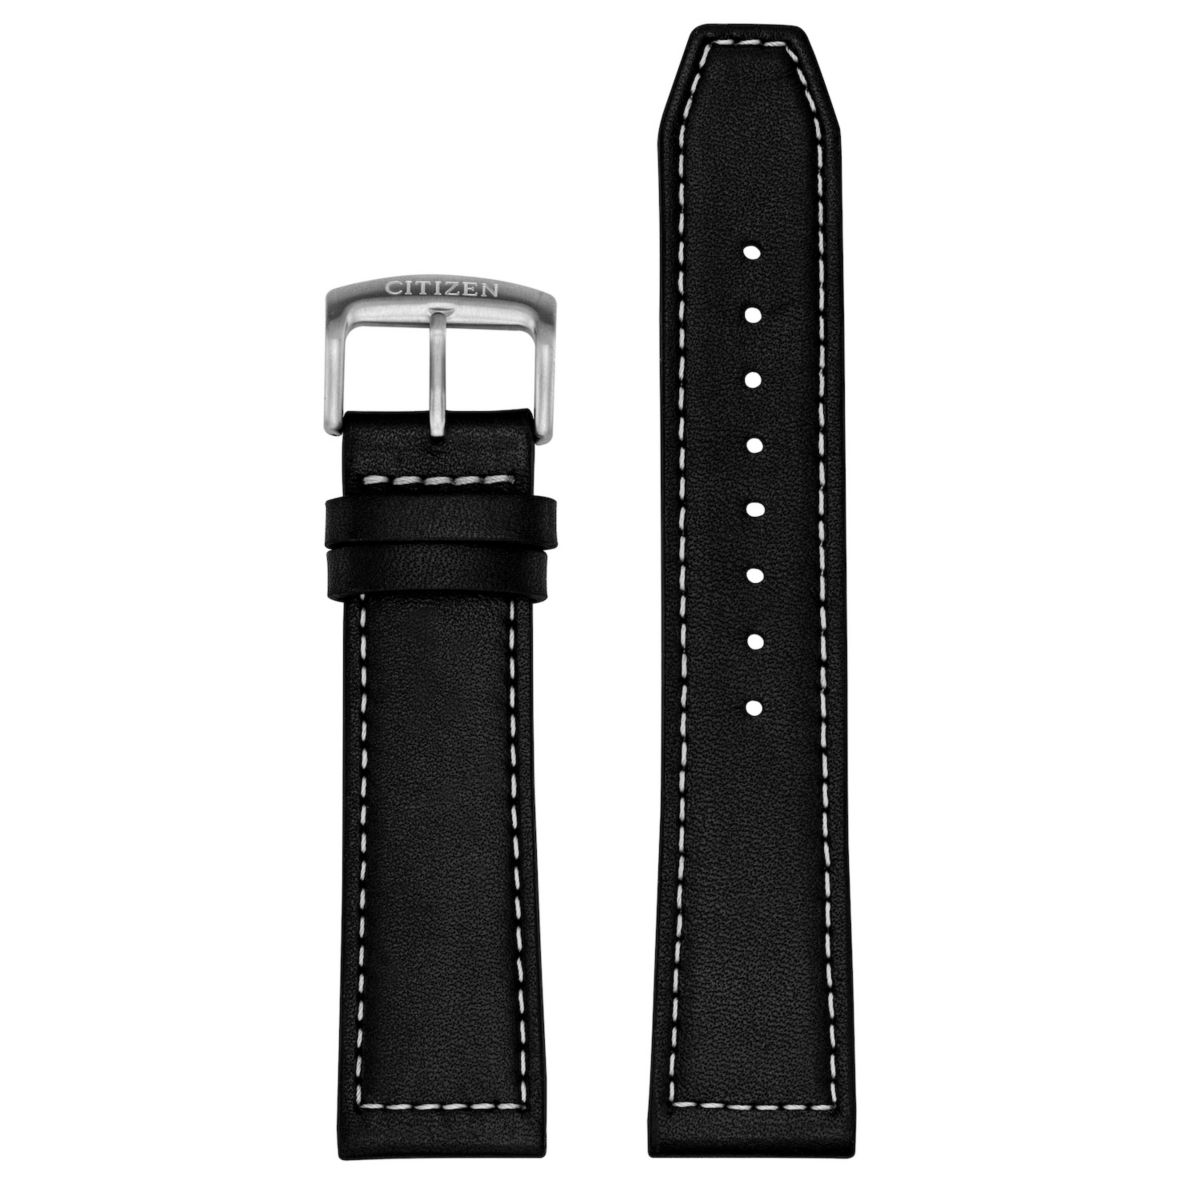 Мужские смарт-часы Citizen CZ Smart 22 мм из черной кожи и нержавеющей стали со сменным ремешком Citizen